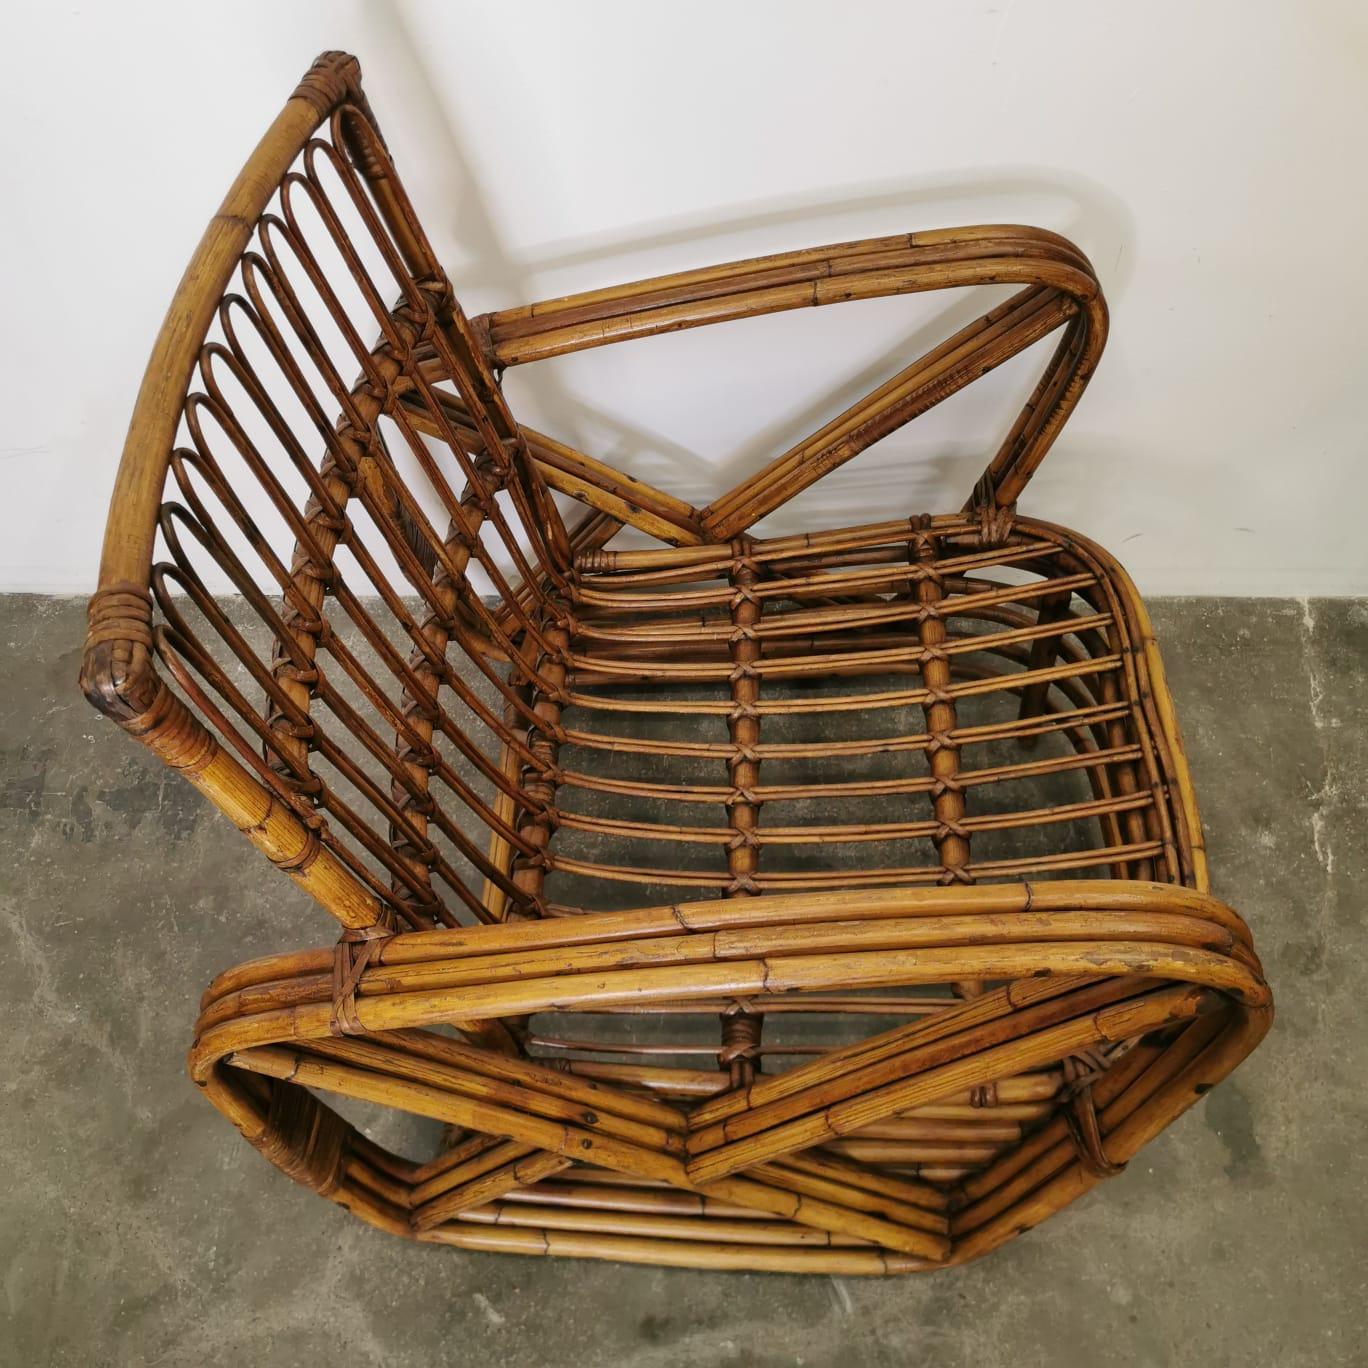 L'ensemble de 2 fauteuils en bambou conçu par Paul Frankl est une combinaison captivante de beauté naturelle et de design moderne. Fabriquées à partir de bambou durable, ces pièces exhalent un air d'élégance organique tout en mettant en valeur les